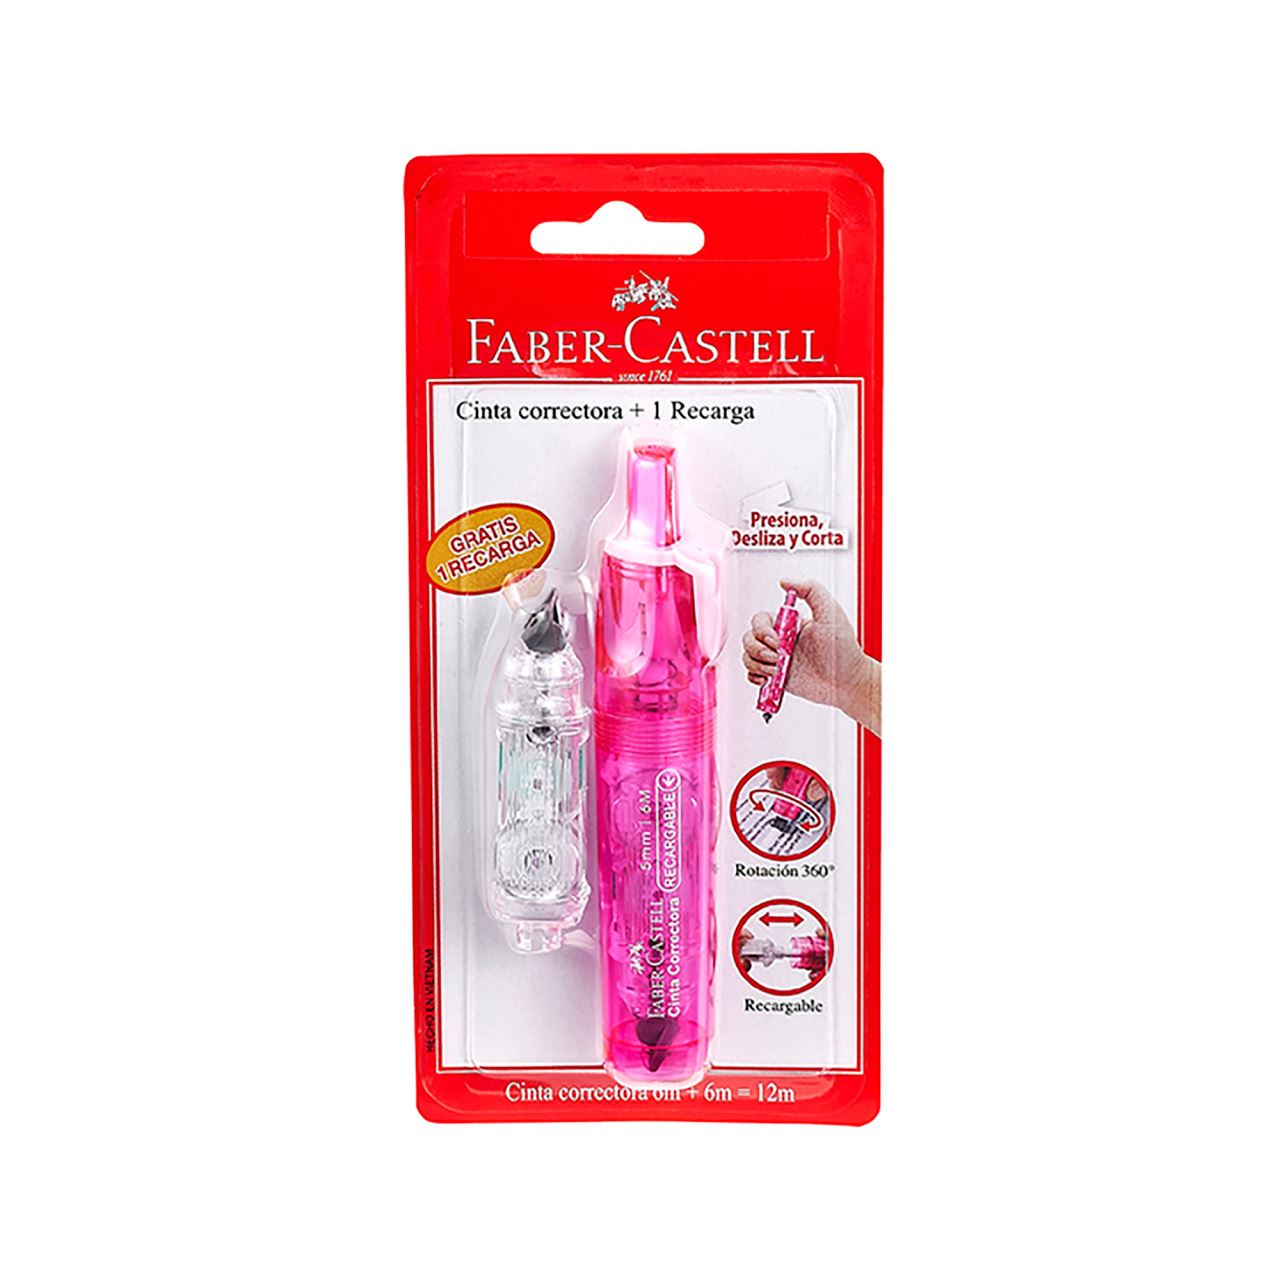 Faber-Castell - Cinta correctora retráctil rosa + 1 recarga